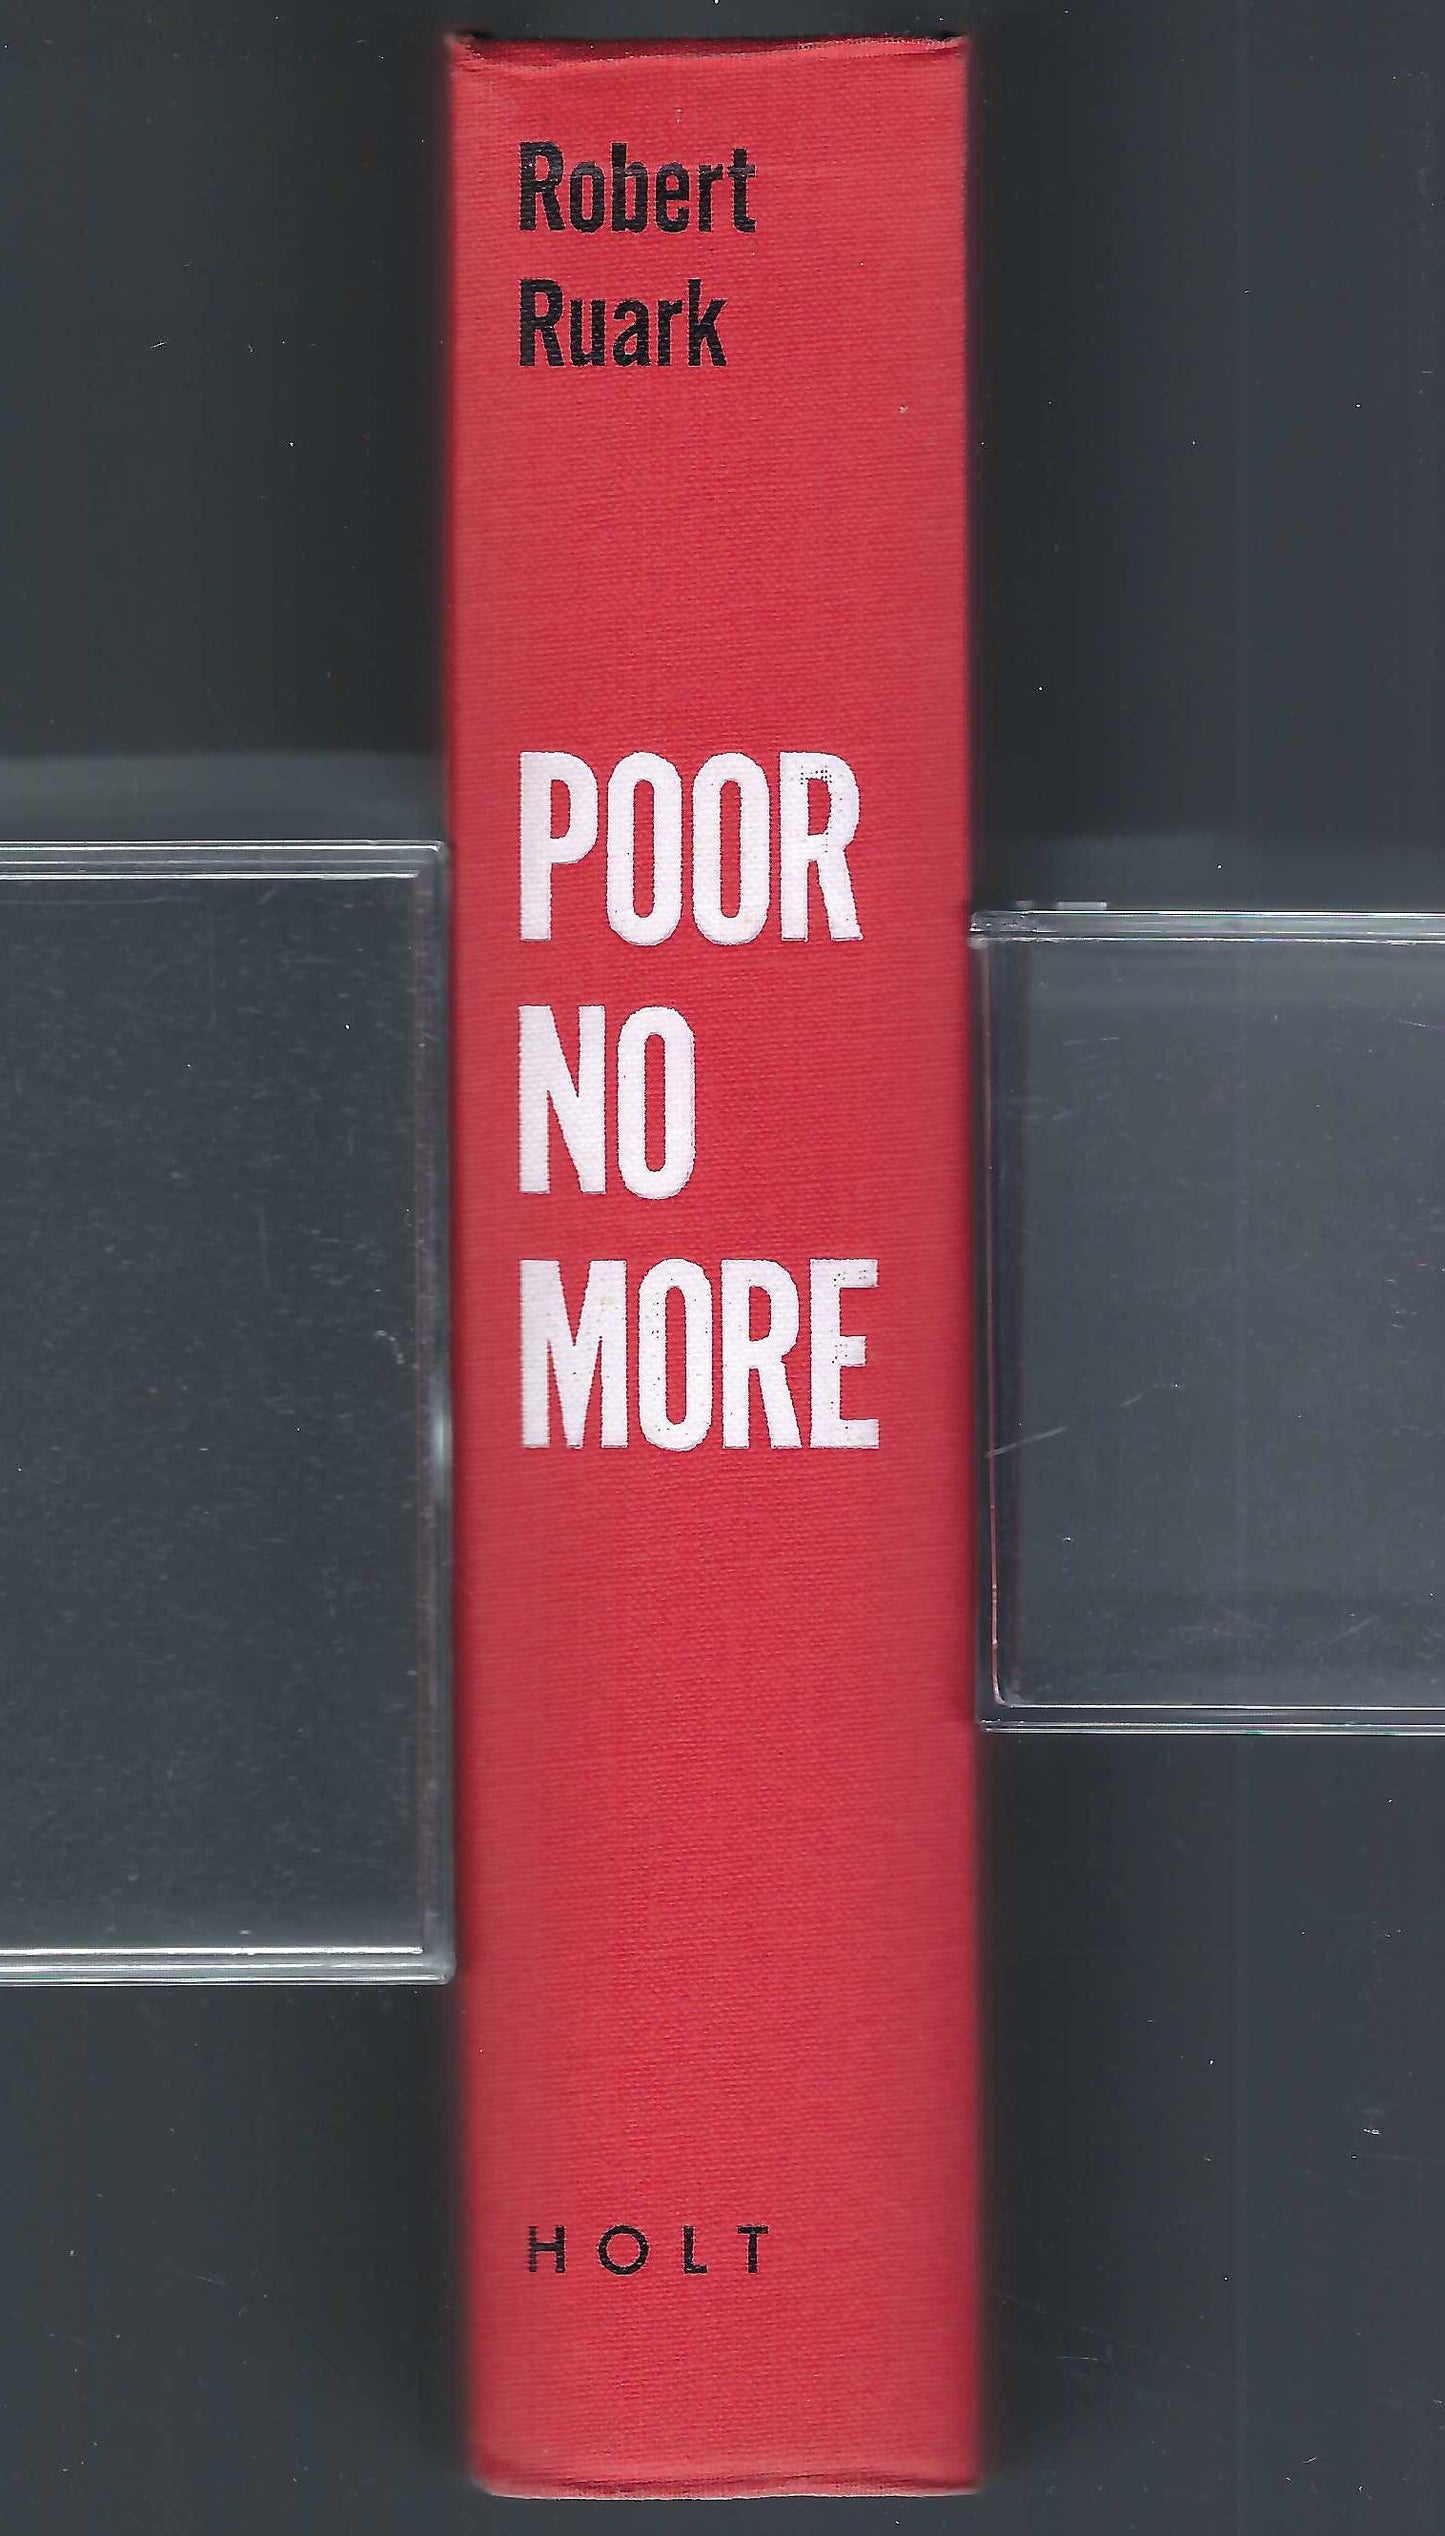 Poor No More by Robert Ruark book spine